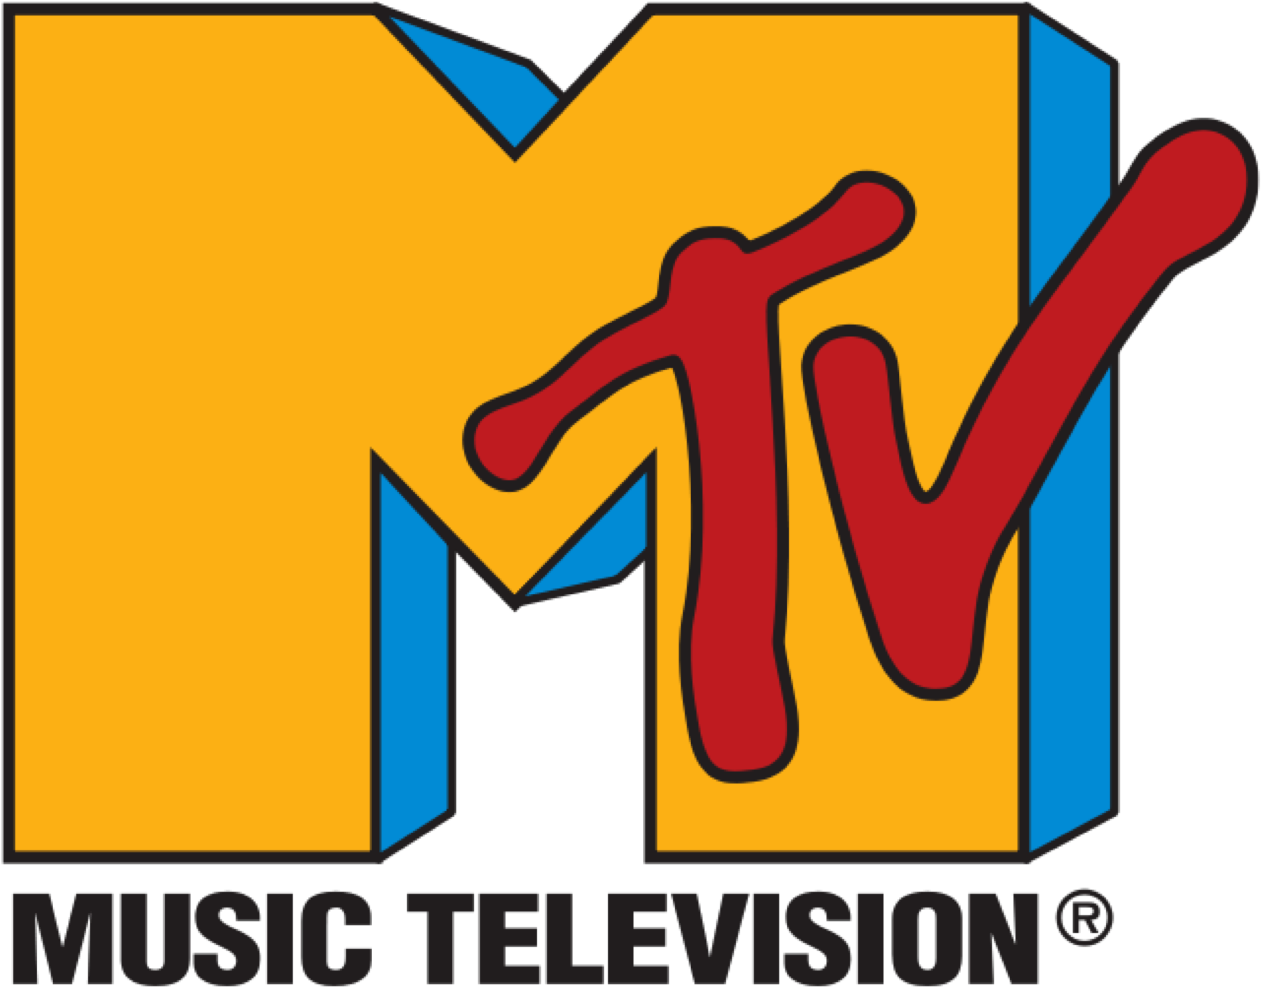 File - Mtv-logo - Svg - 90s Mtv Logo Clipart (673x535), Png Download.